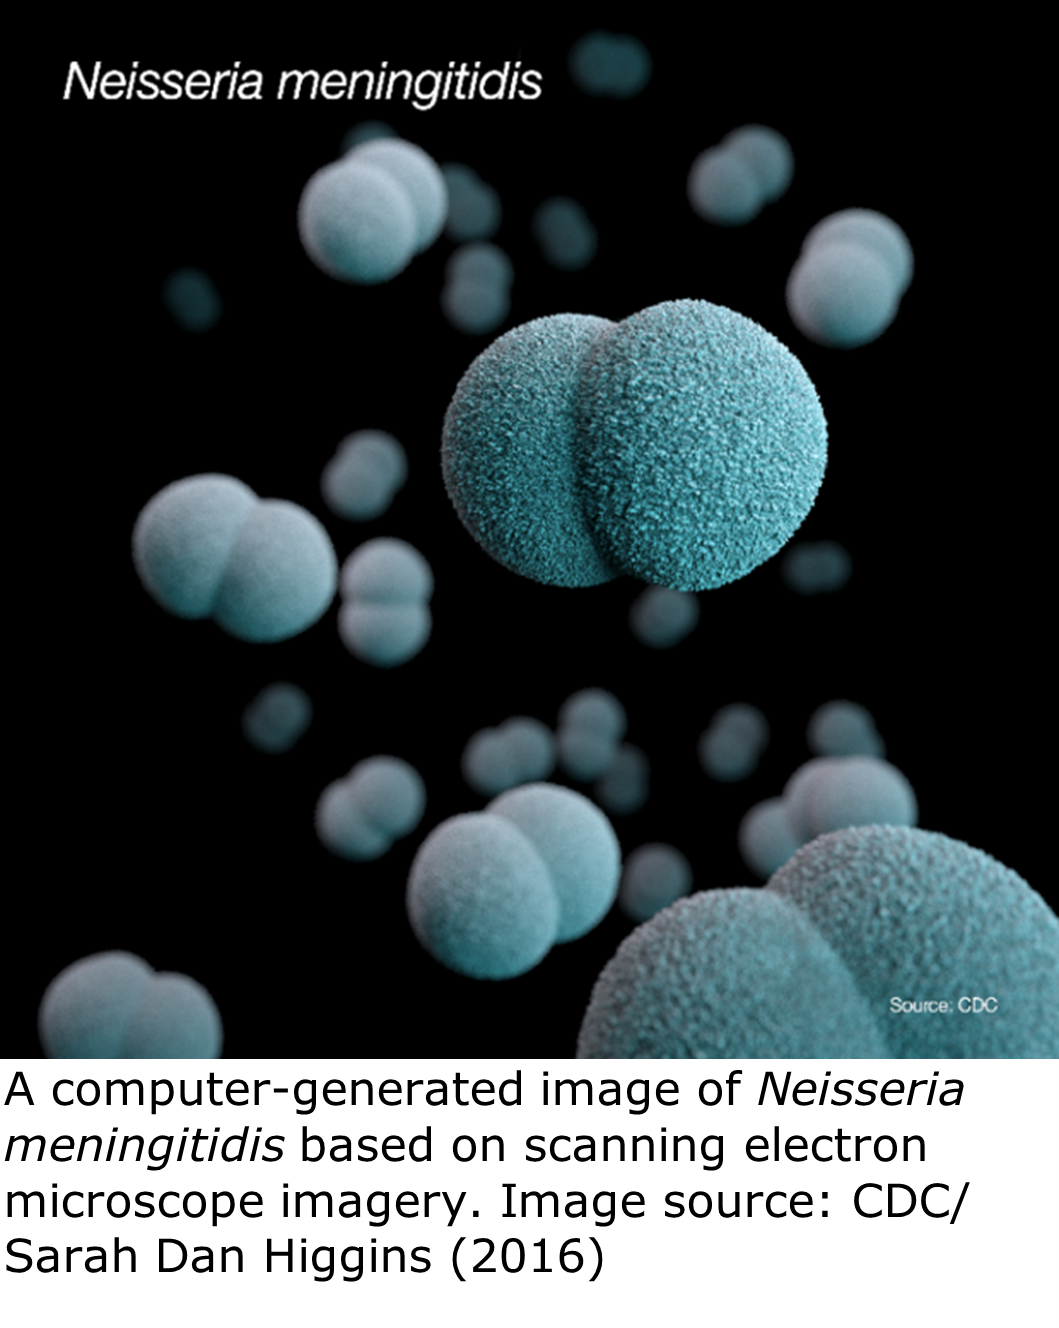 "Several blue-colored di-cocci bacteria with a dark background. "